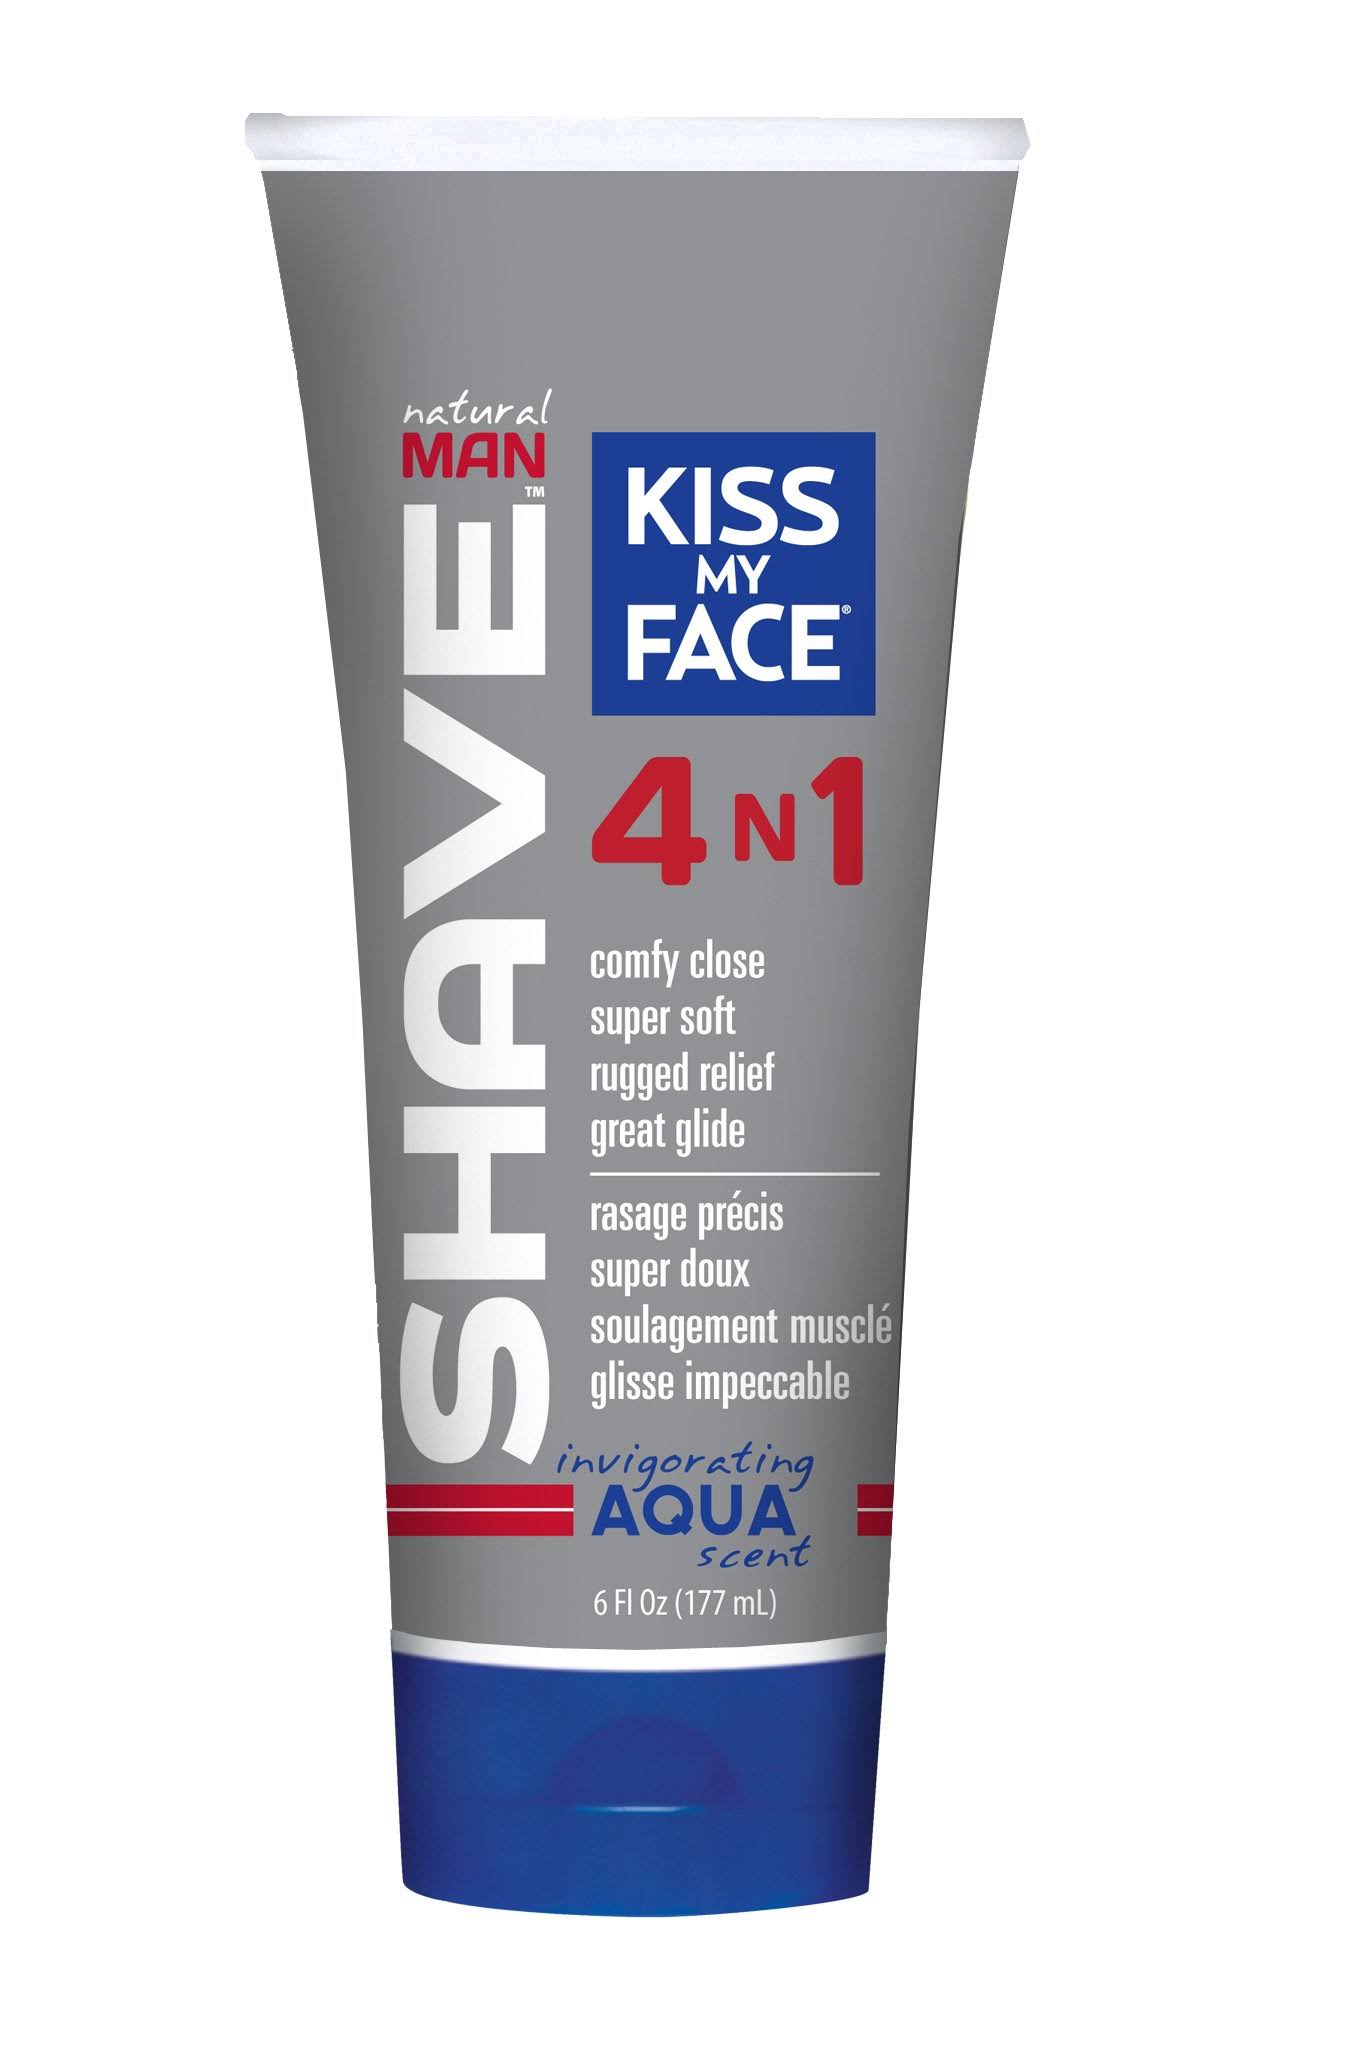 Kiss My Face 4 in 1 Natural Man Moisture Shave Cream - Aqua, 6oz